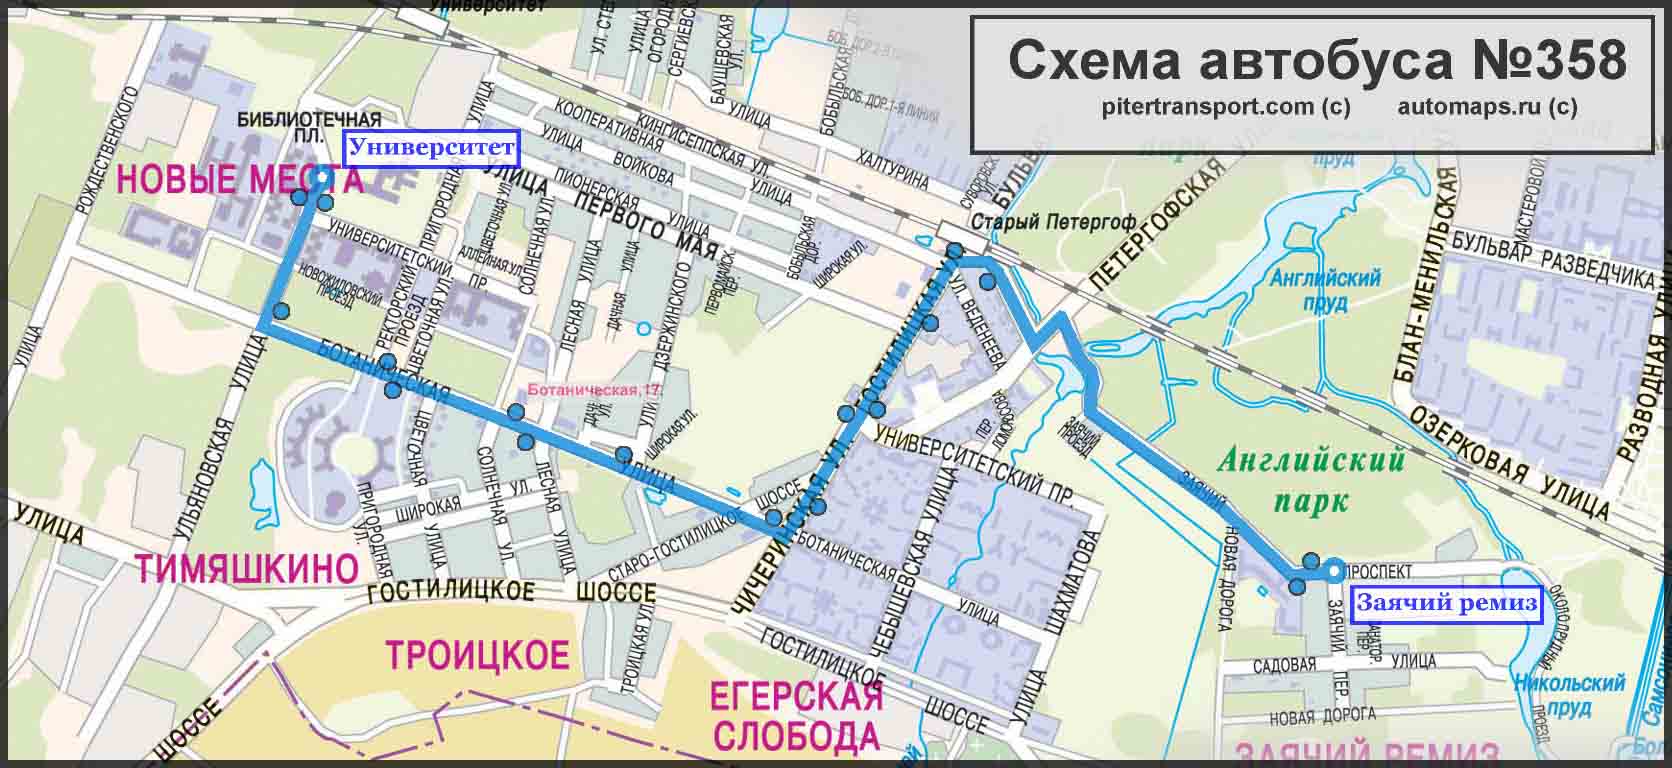 Как добраться до петергофа из санкт-петербурга на маршрутке, автобусе, метро, метеоре, машине, электричке